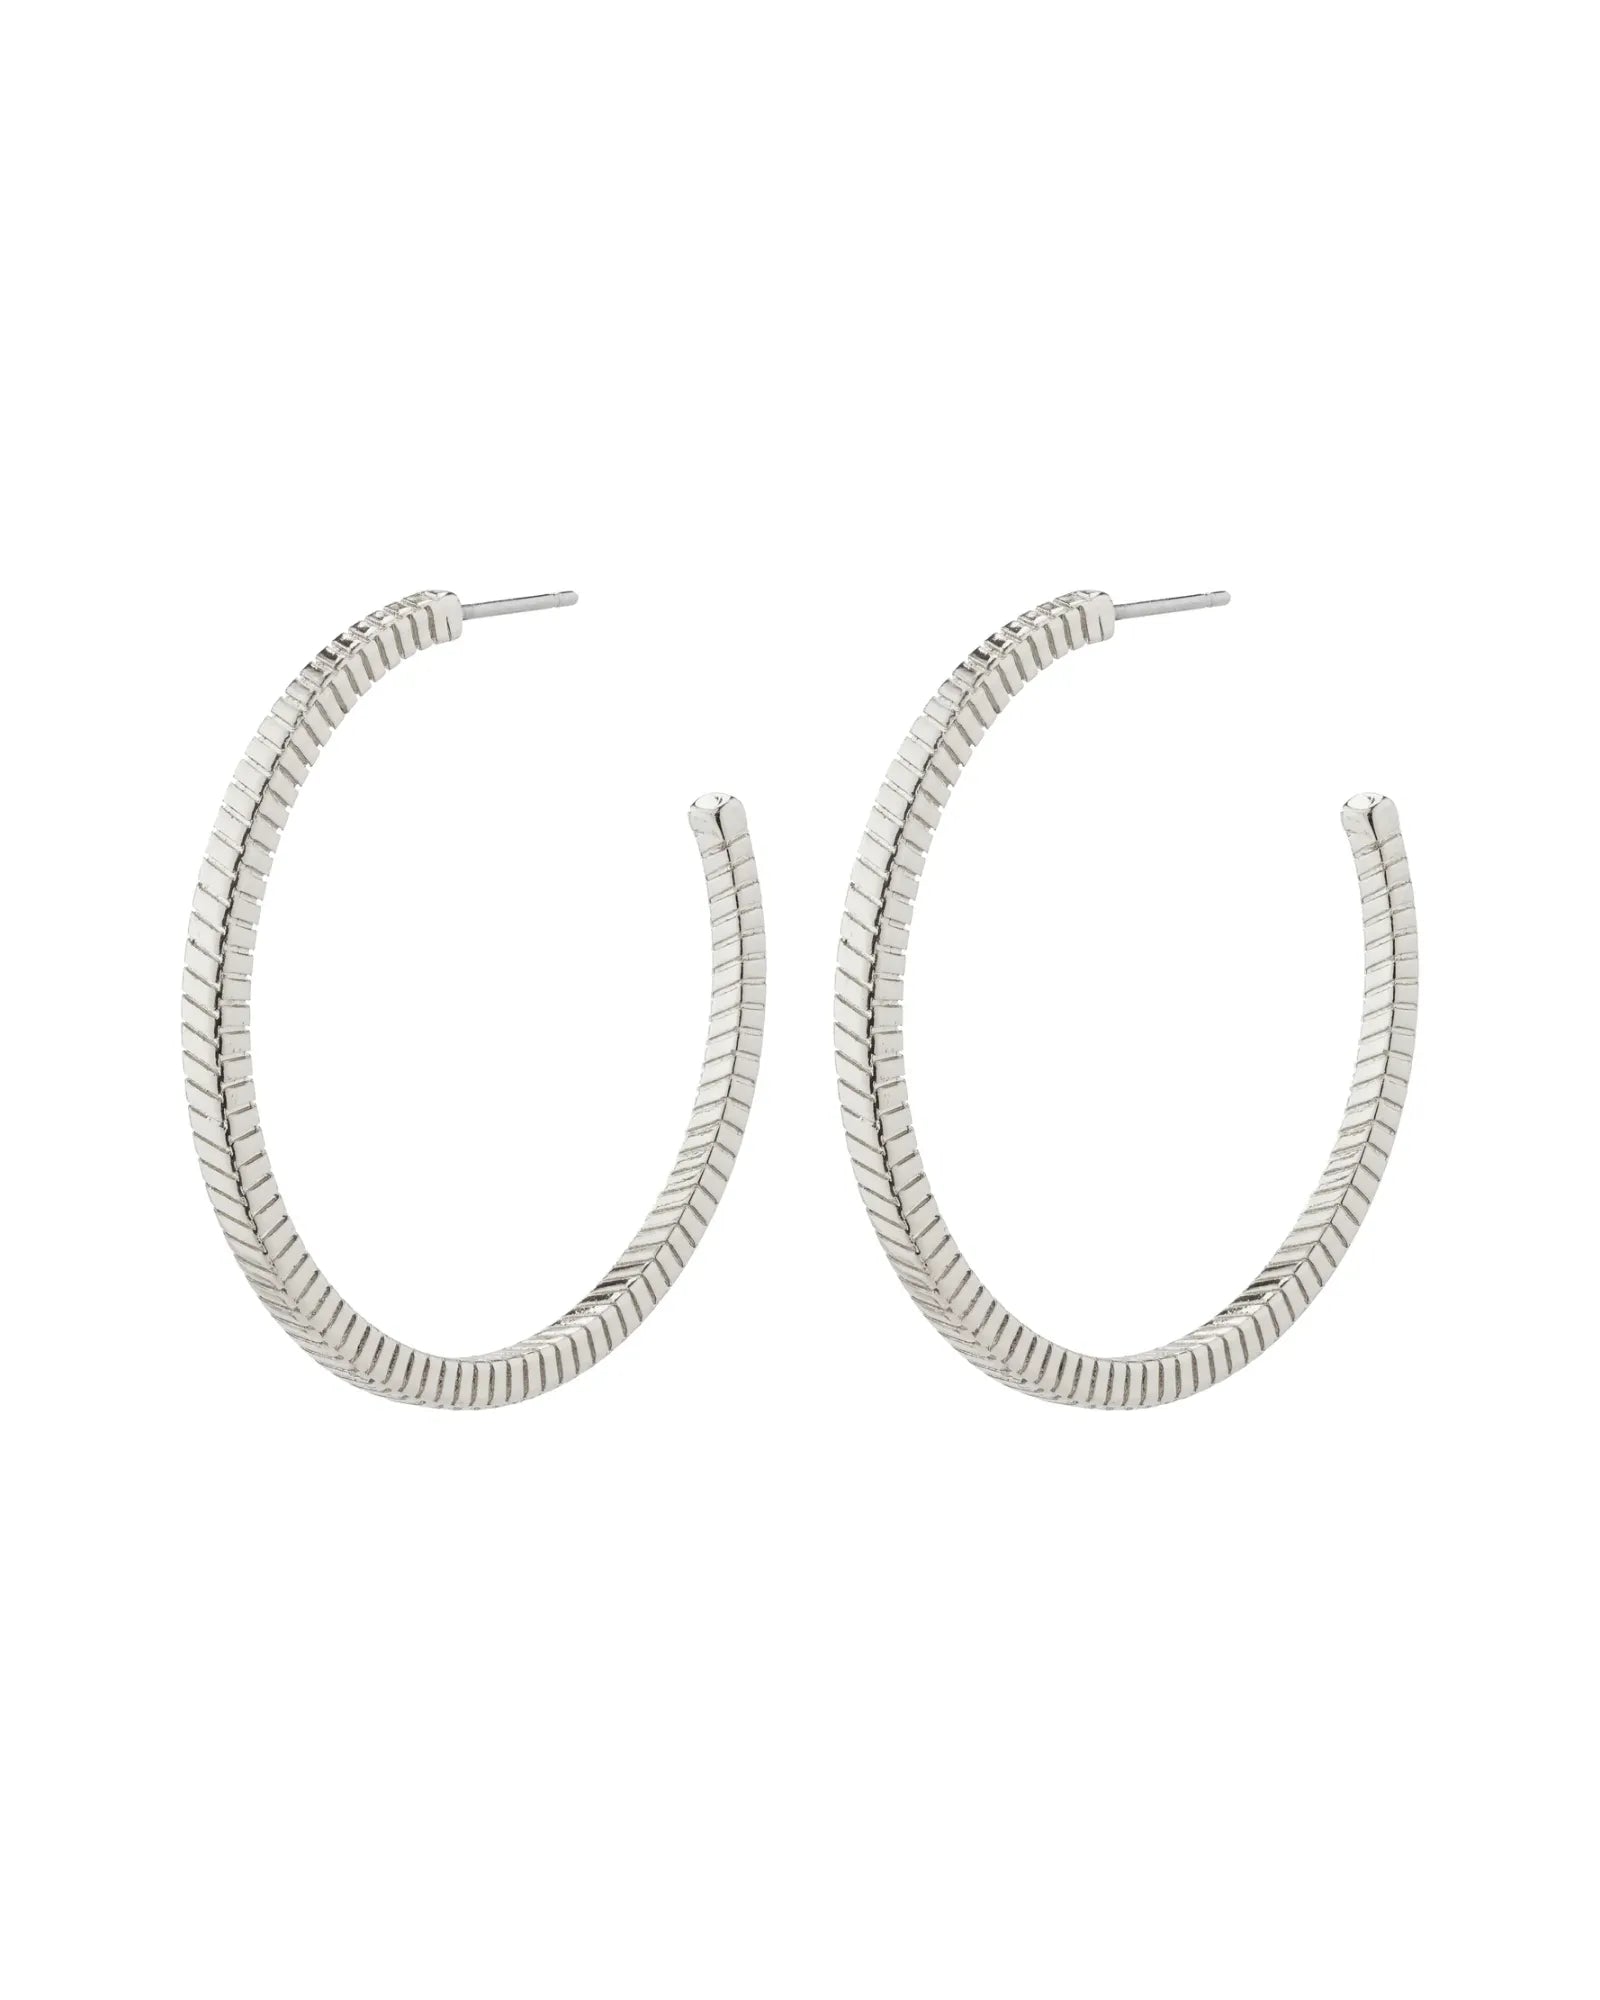 LIDIA Recycled Hoop Earrings - Silver Plated